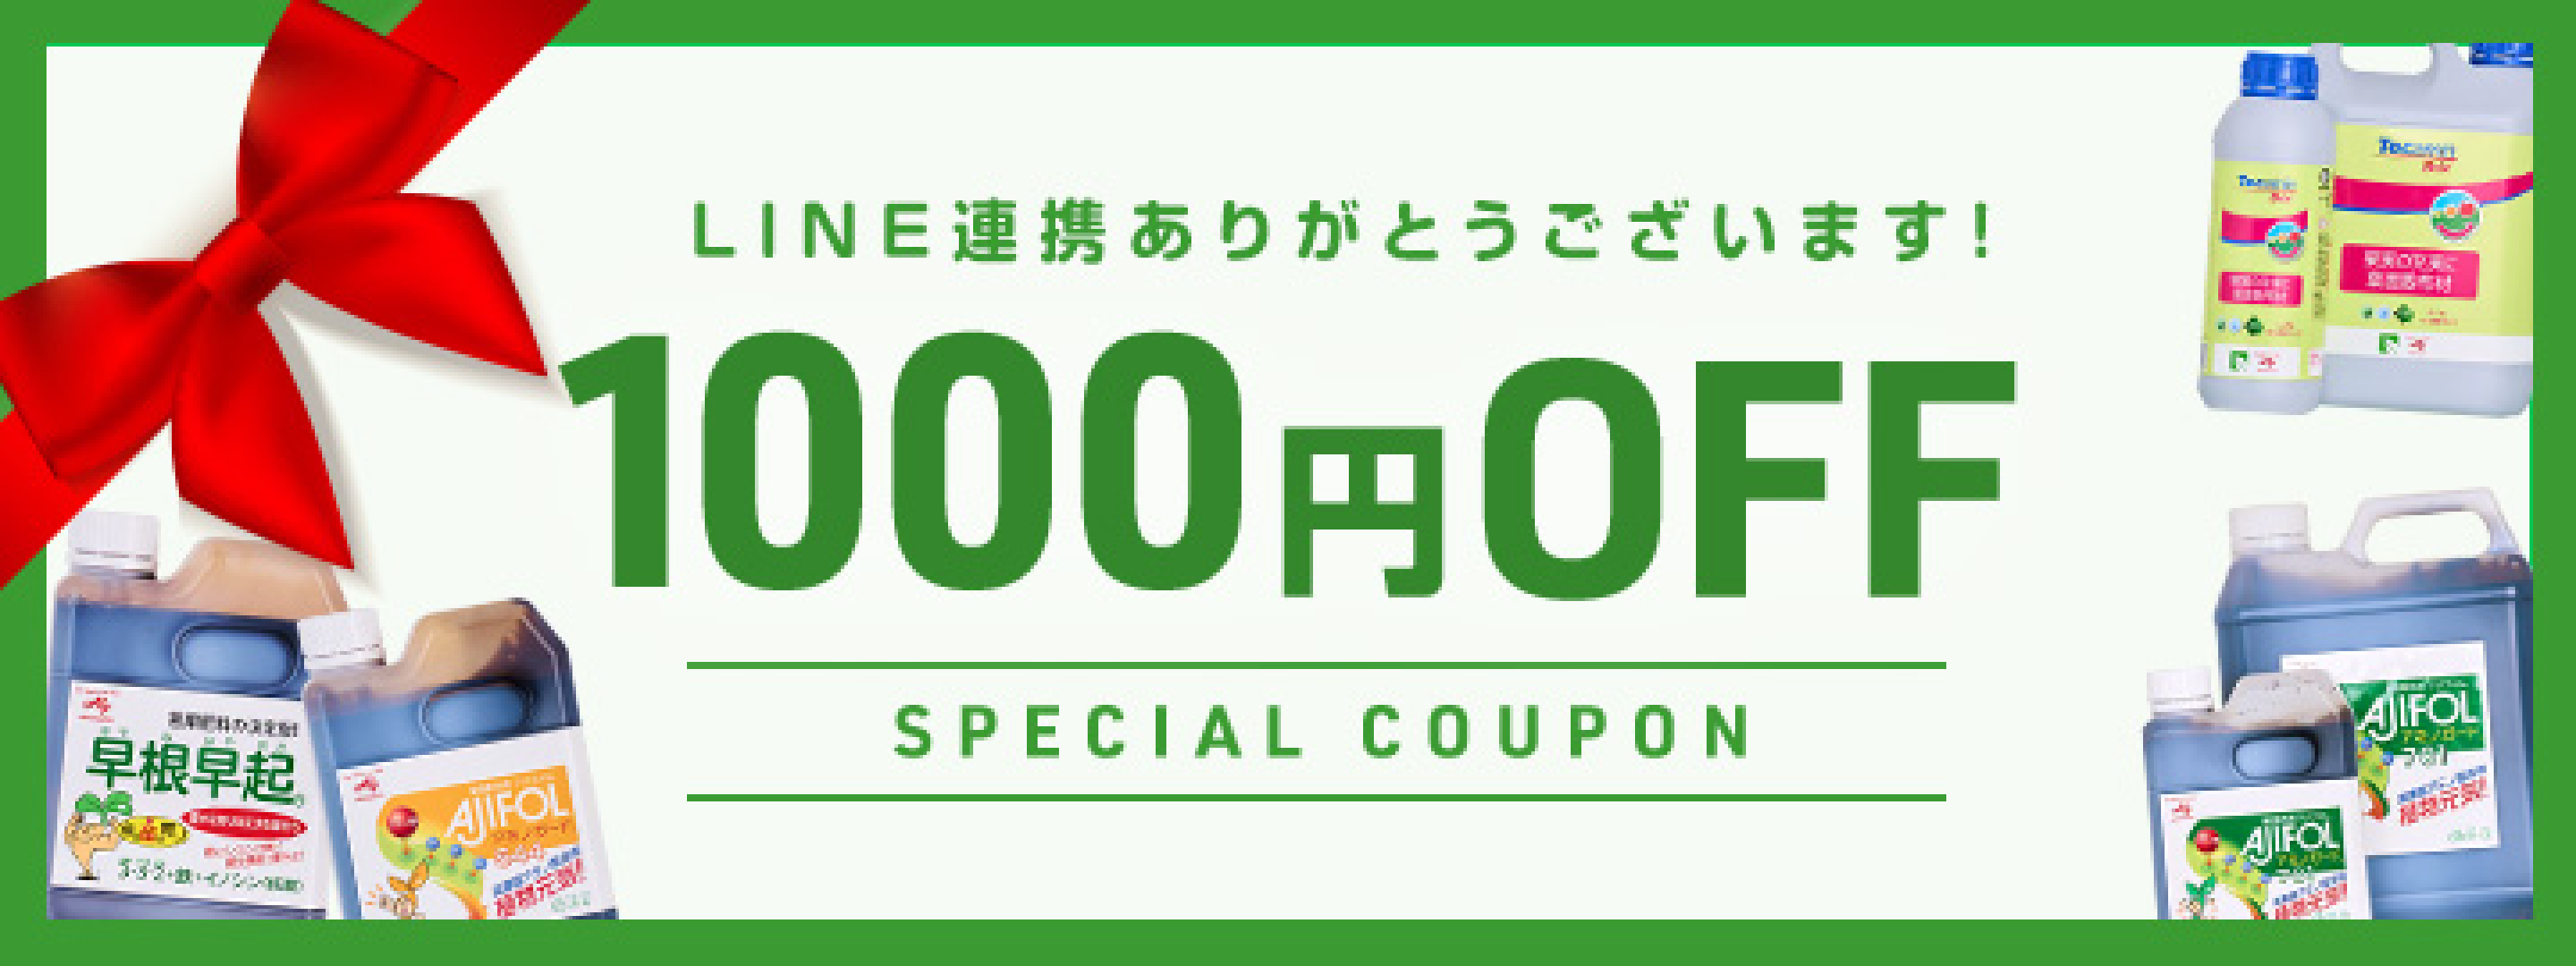 1000円OFF SPECIAL COUPON